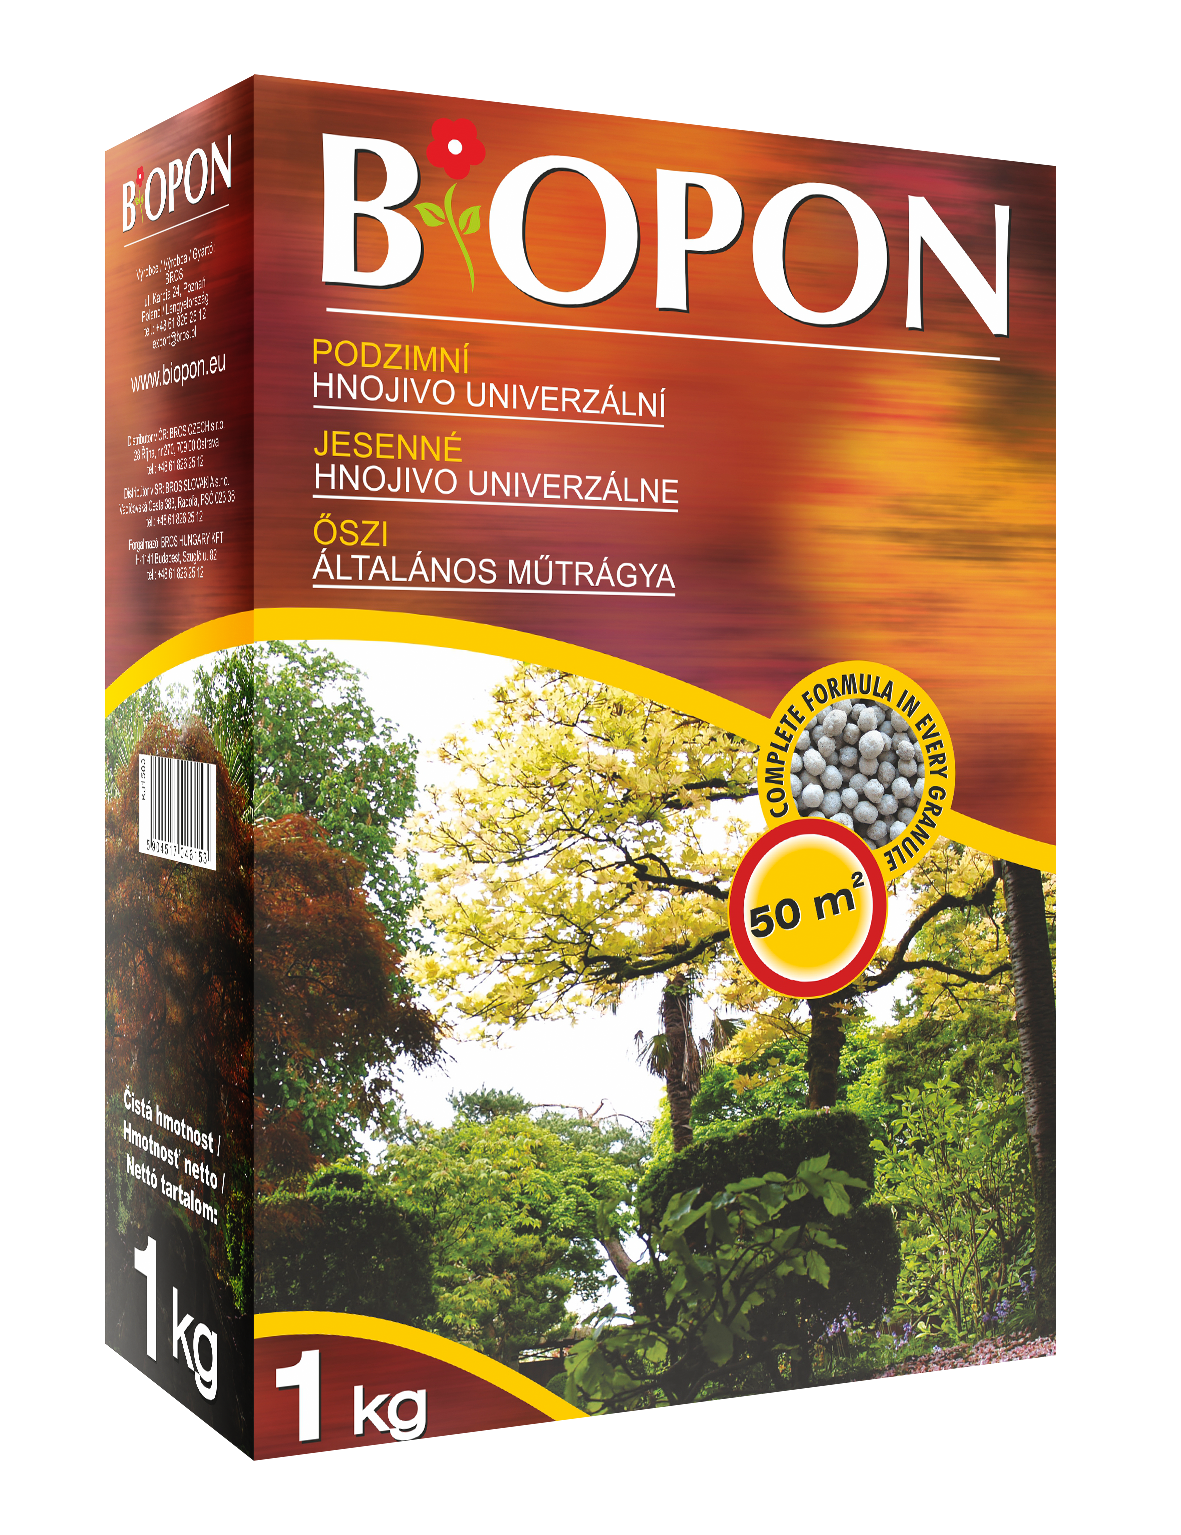 Biopon Herbstvolldünger 1 kg